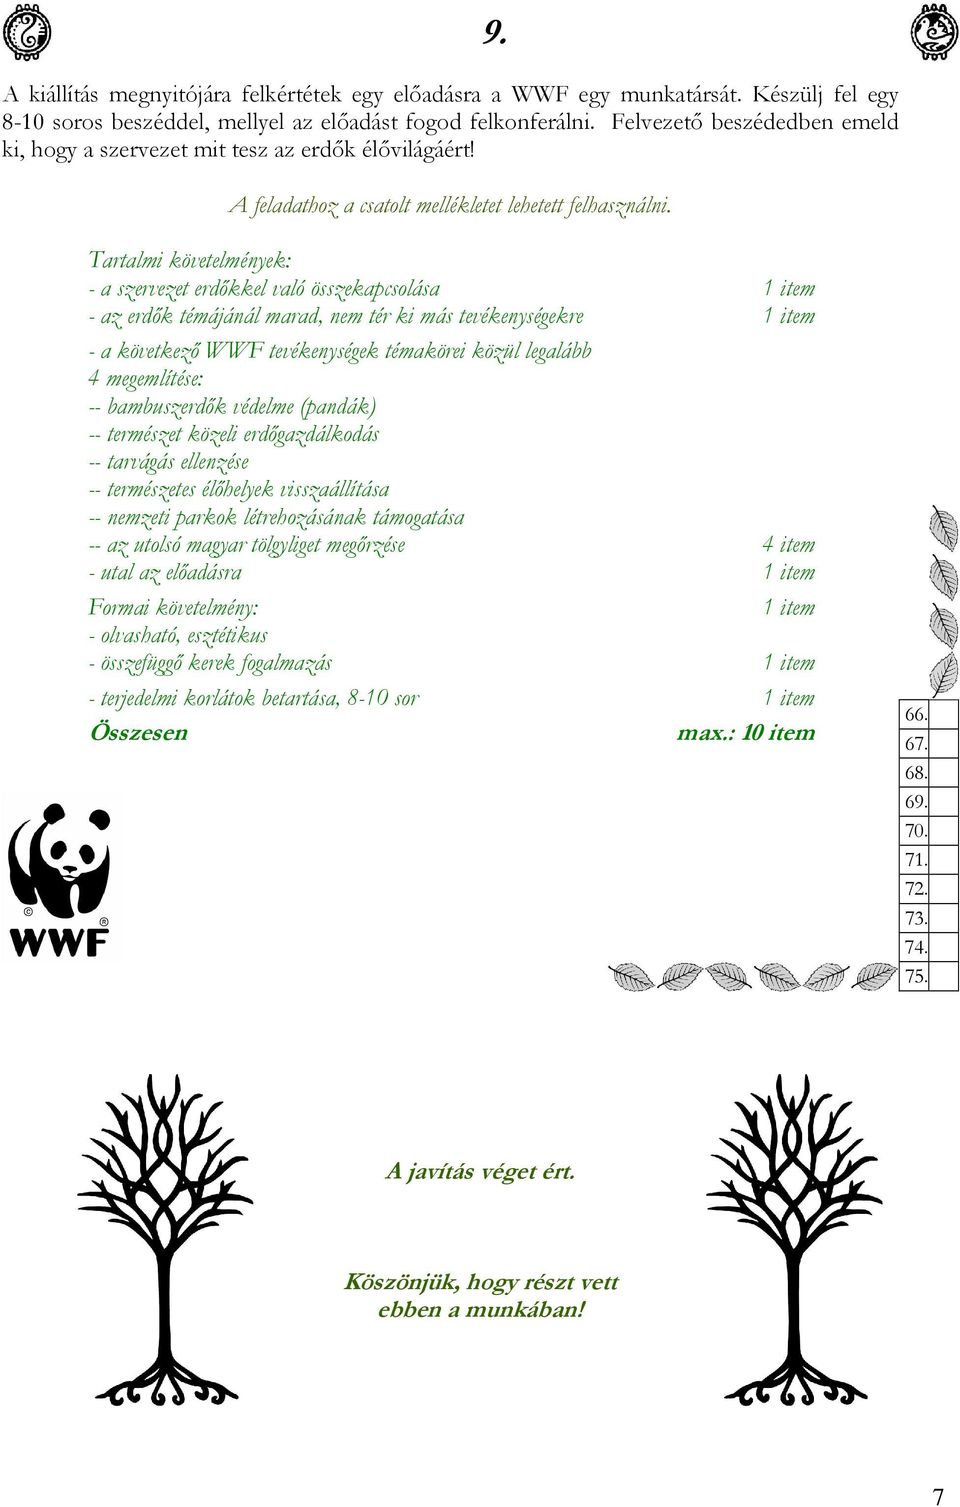 Tartalmi követelmények: - a szervezet erdőkkel való összekapcsolása 1 item - az erdők témájánál marad, nem tér ki más tevékenységekre 1 item - a következő WWF tevékenységek témakörei közül legalább 4